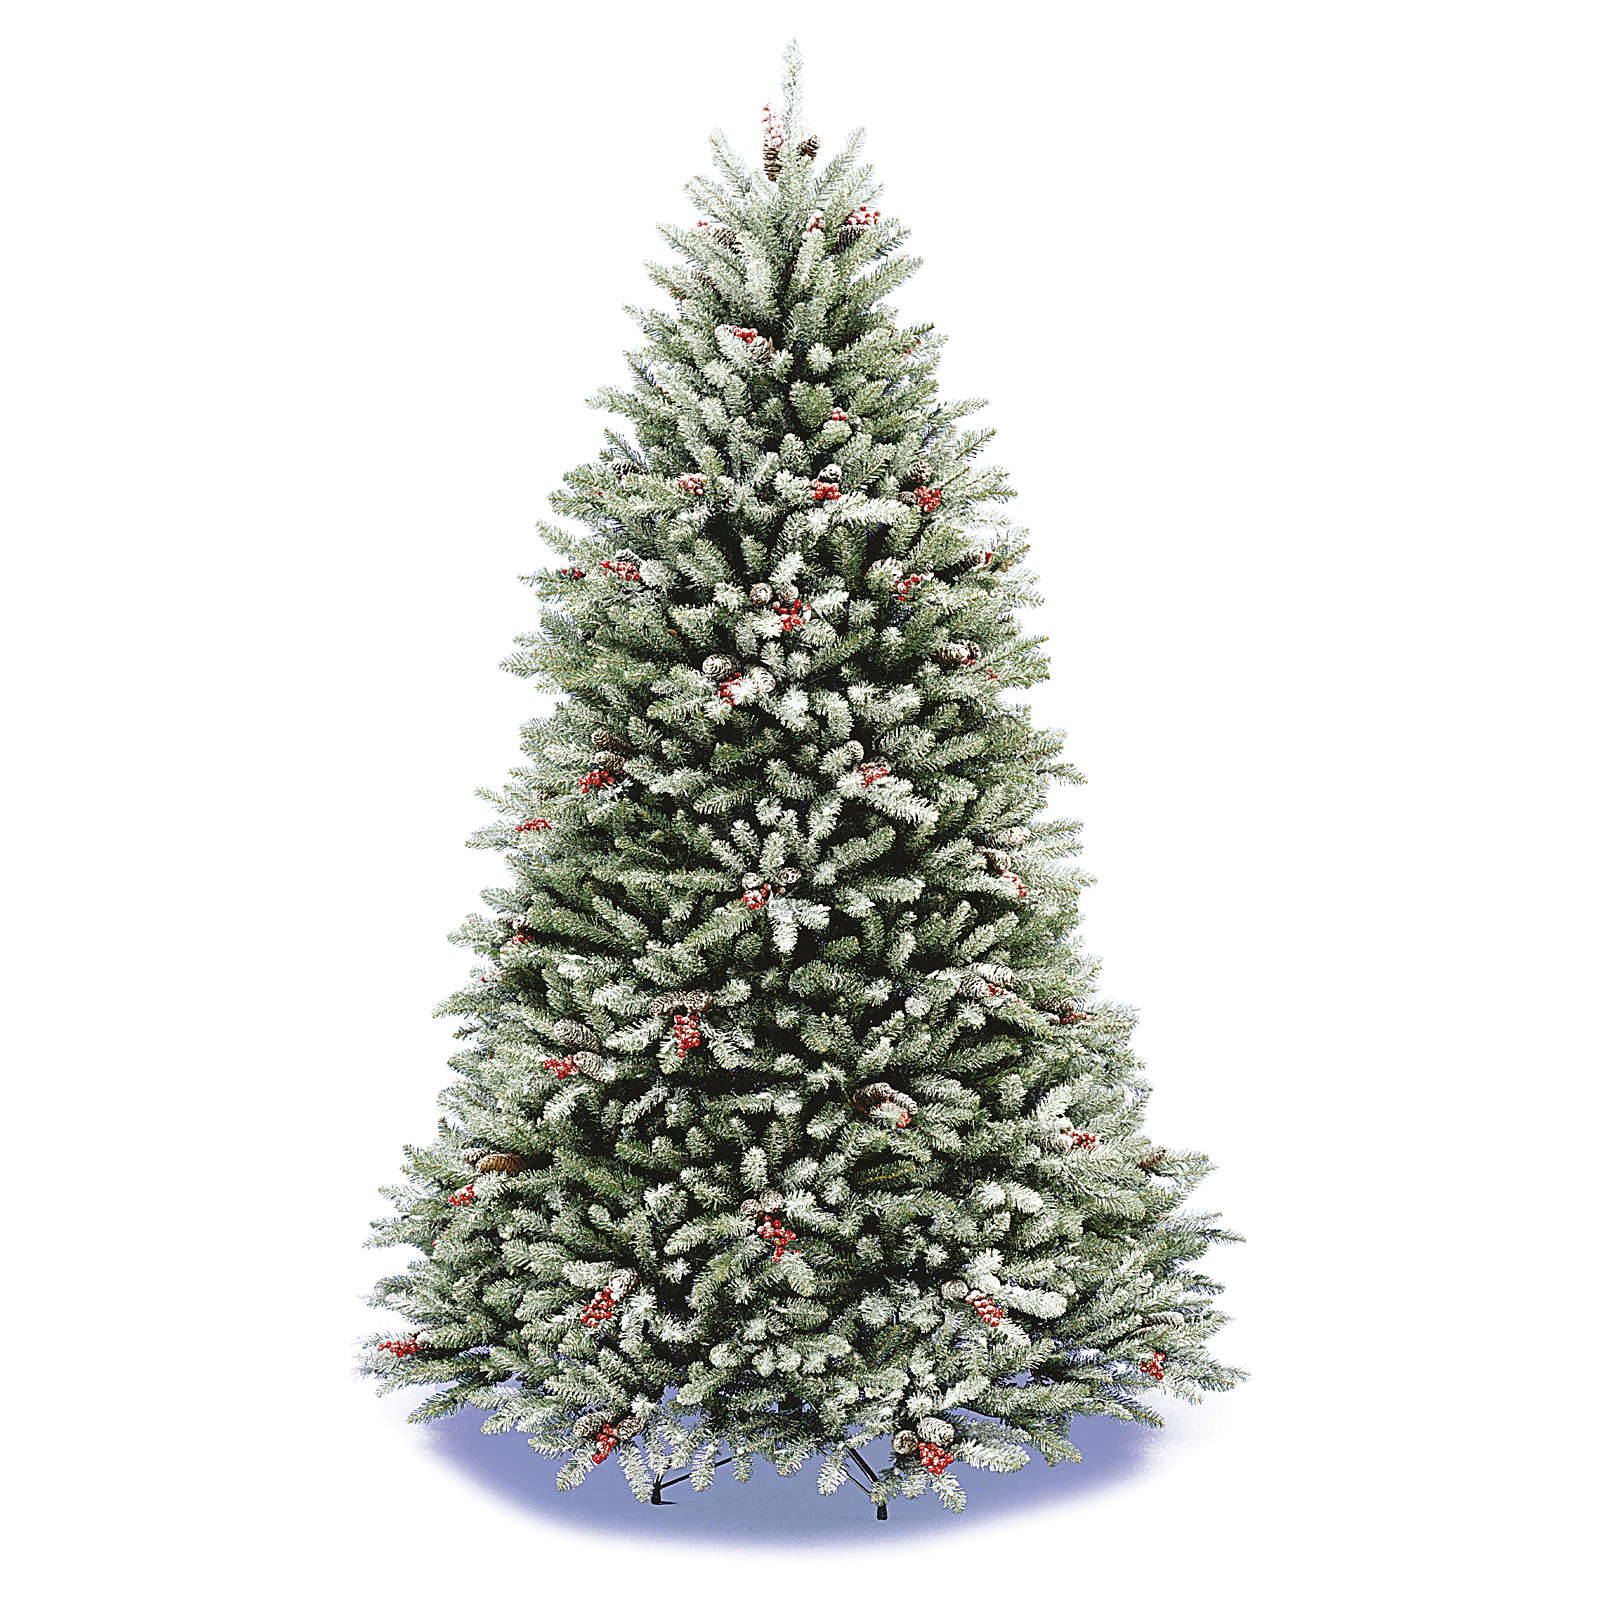 Albero Di Natale 210.Albero Di Natale 210 Cm Floccato Pigne Bacche Modello Dunhill Vendita Online Su Holyart